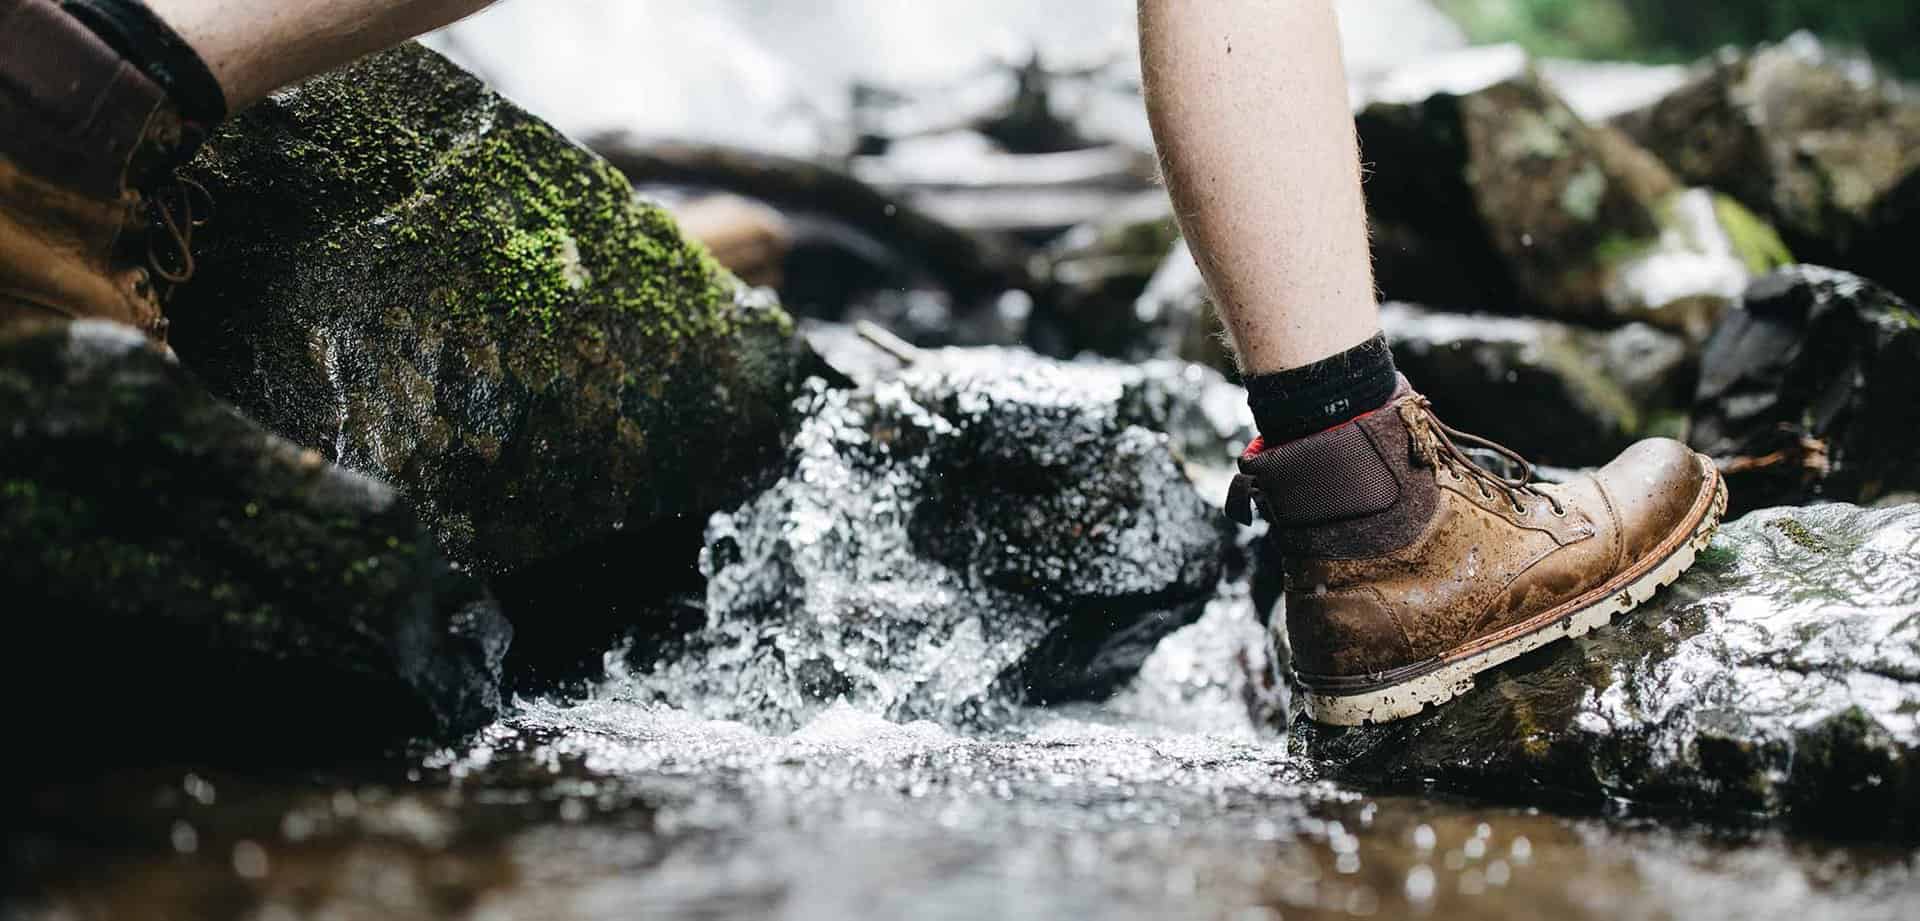 man hiking through water on rocks wearing hiking boots